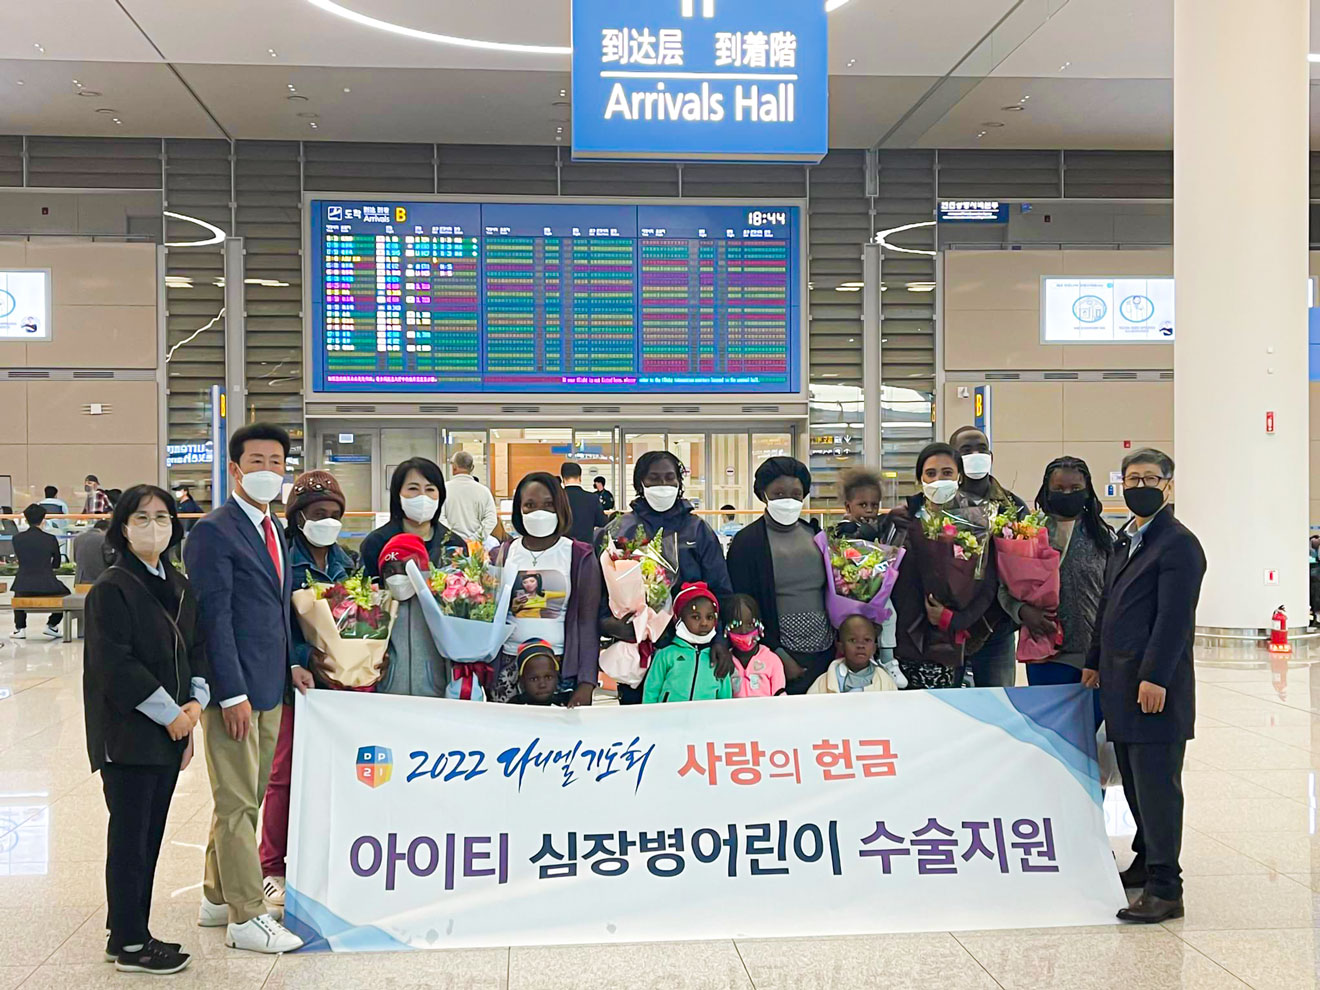 6 enfants haïtiens atteints de maladies cardiovasculaires ont voyagé au Corée pour être opérés.